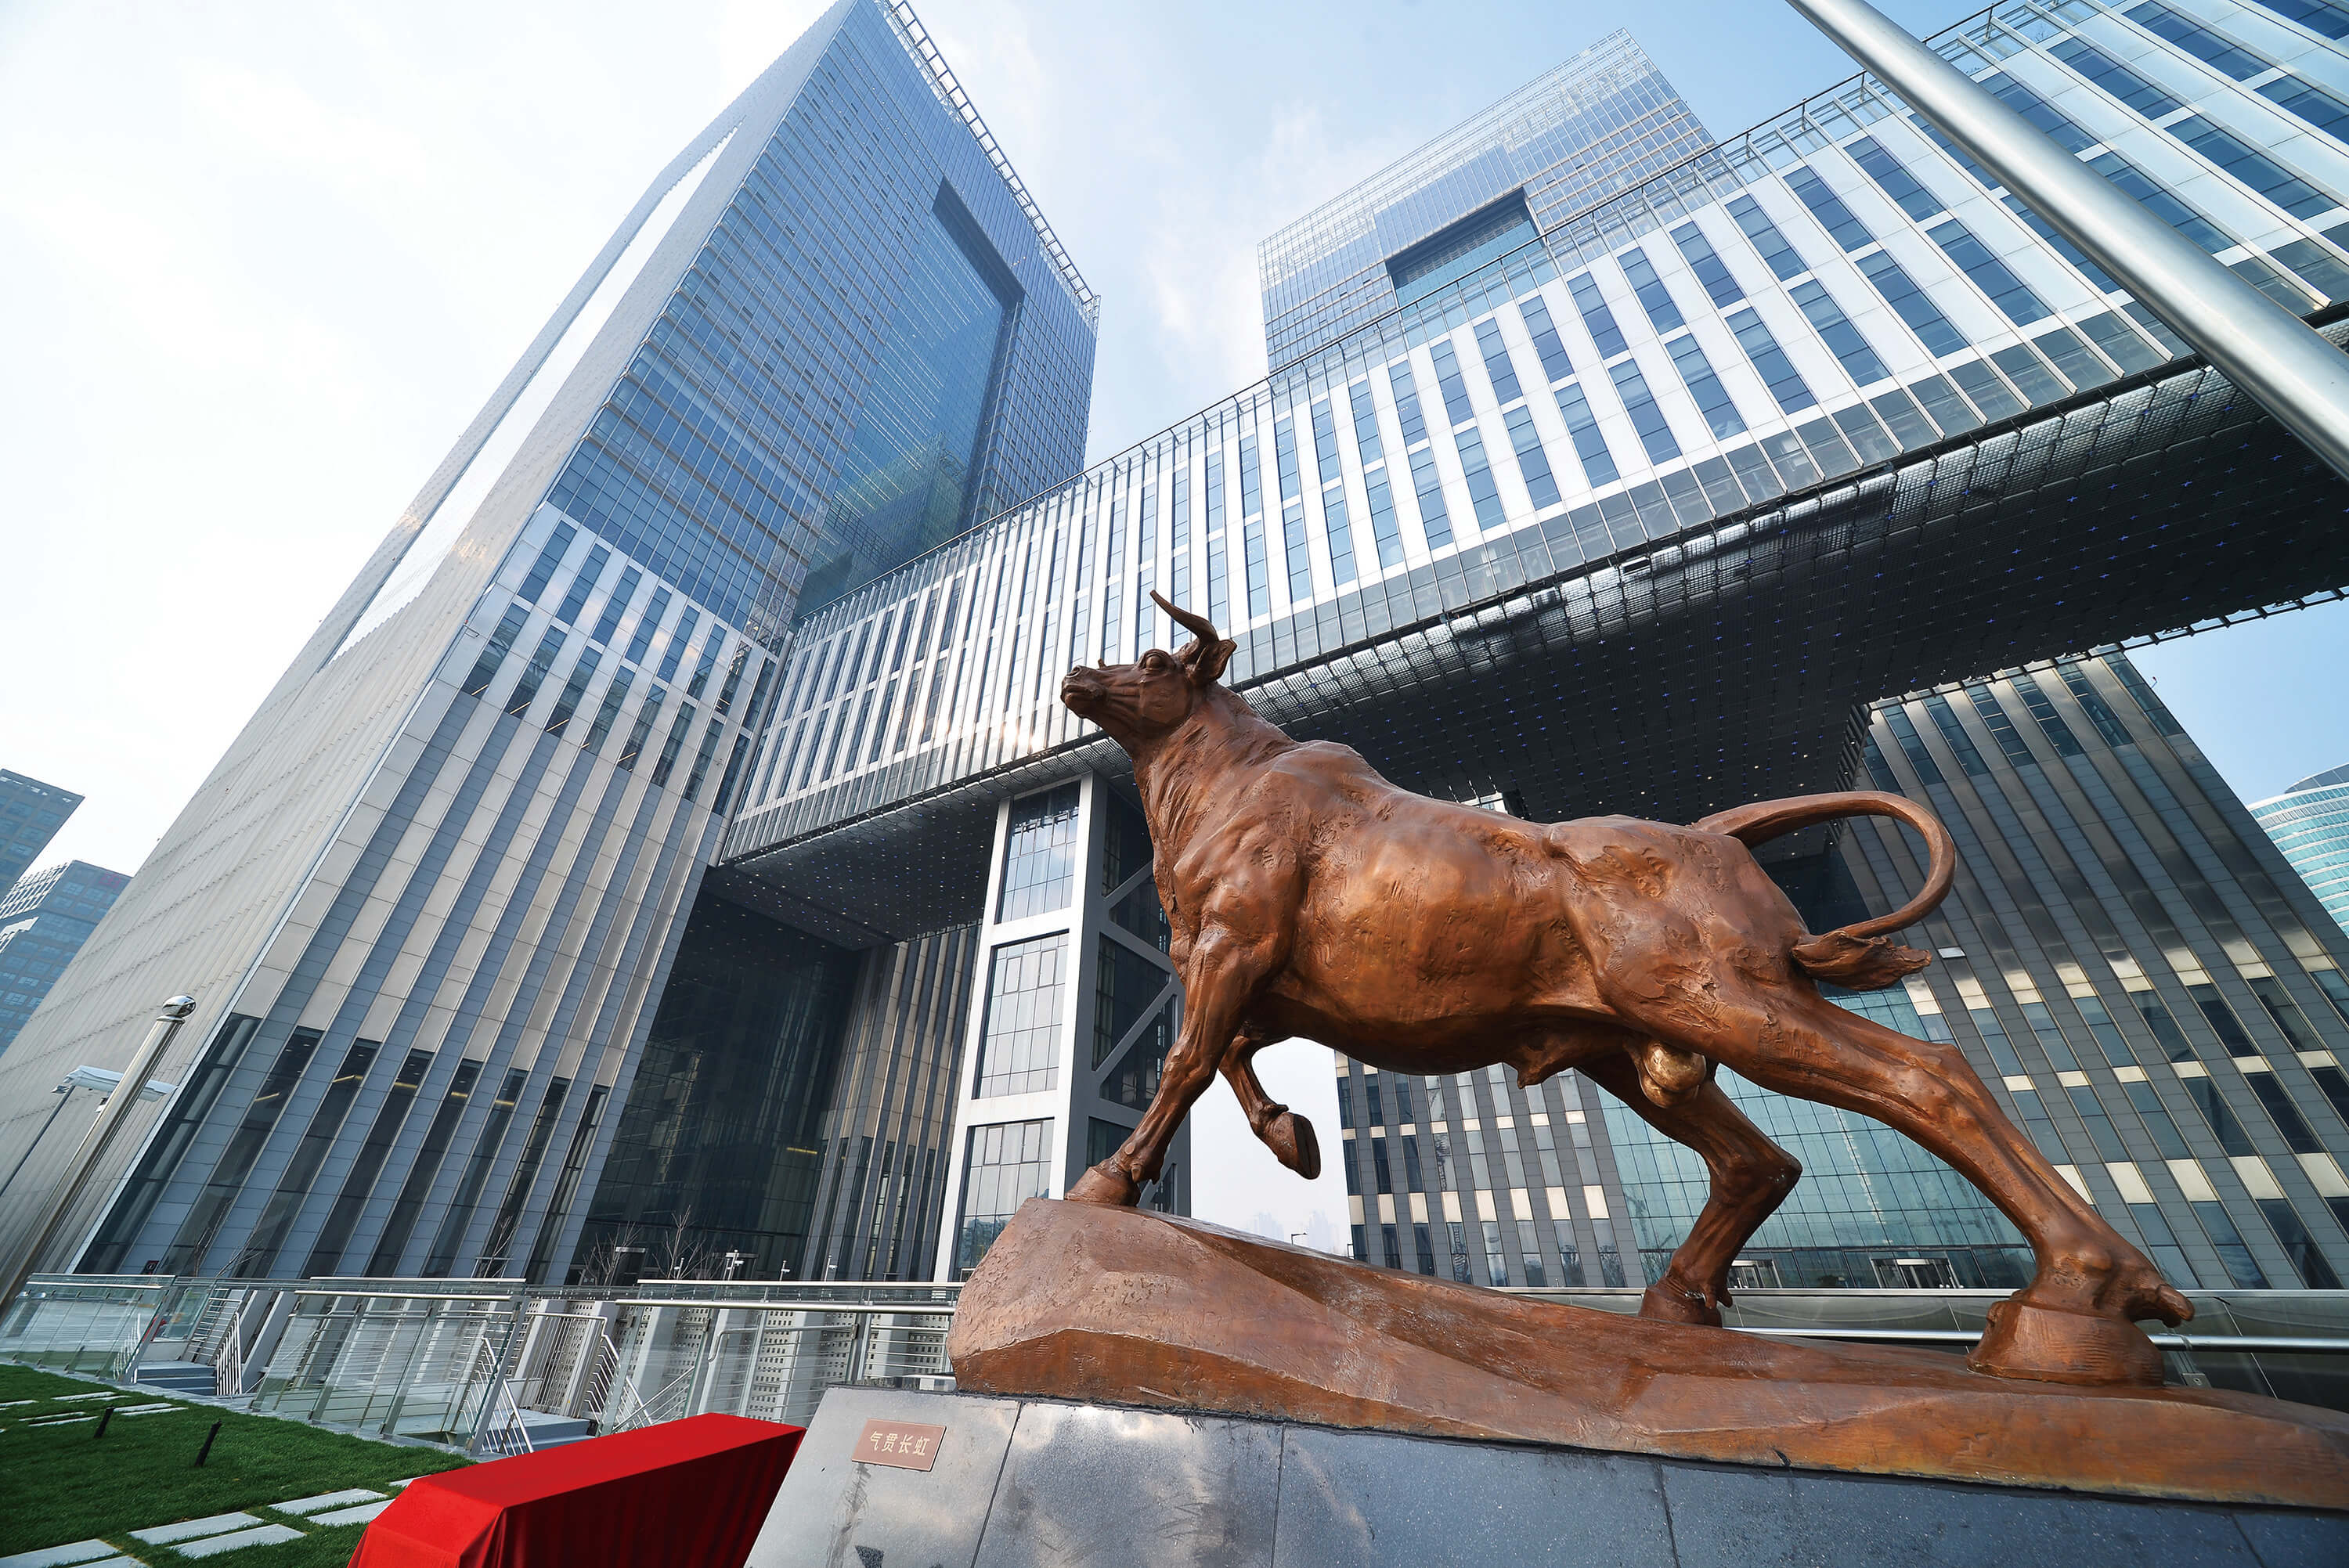 上海证券交易所外观图片